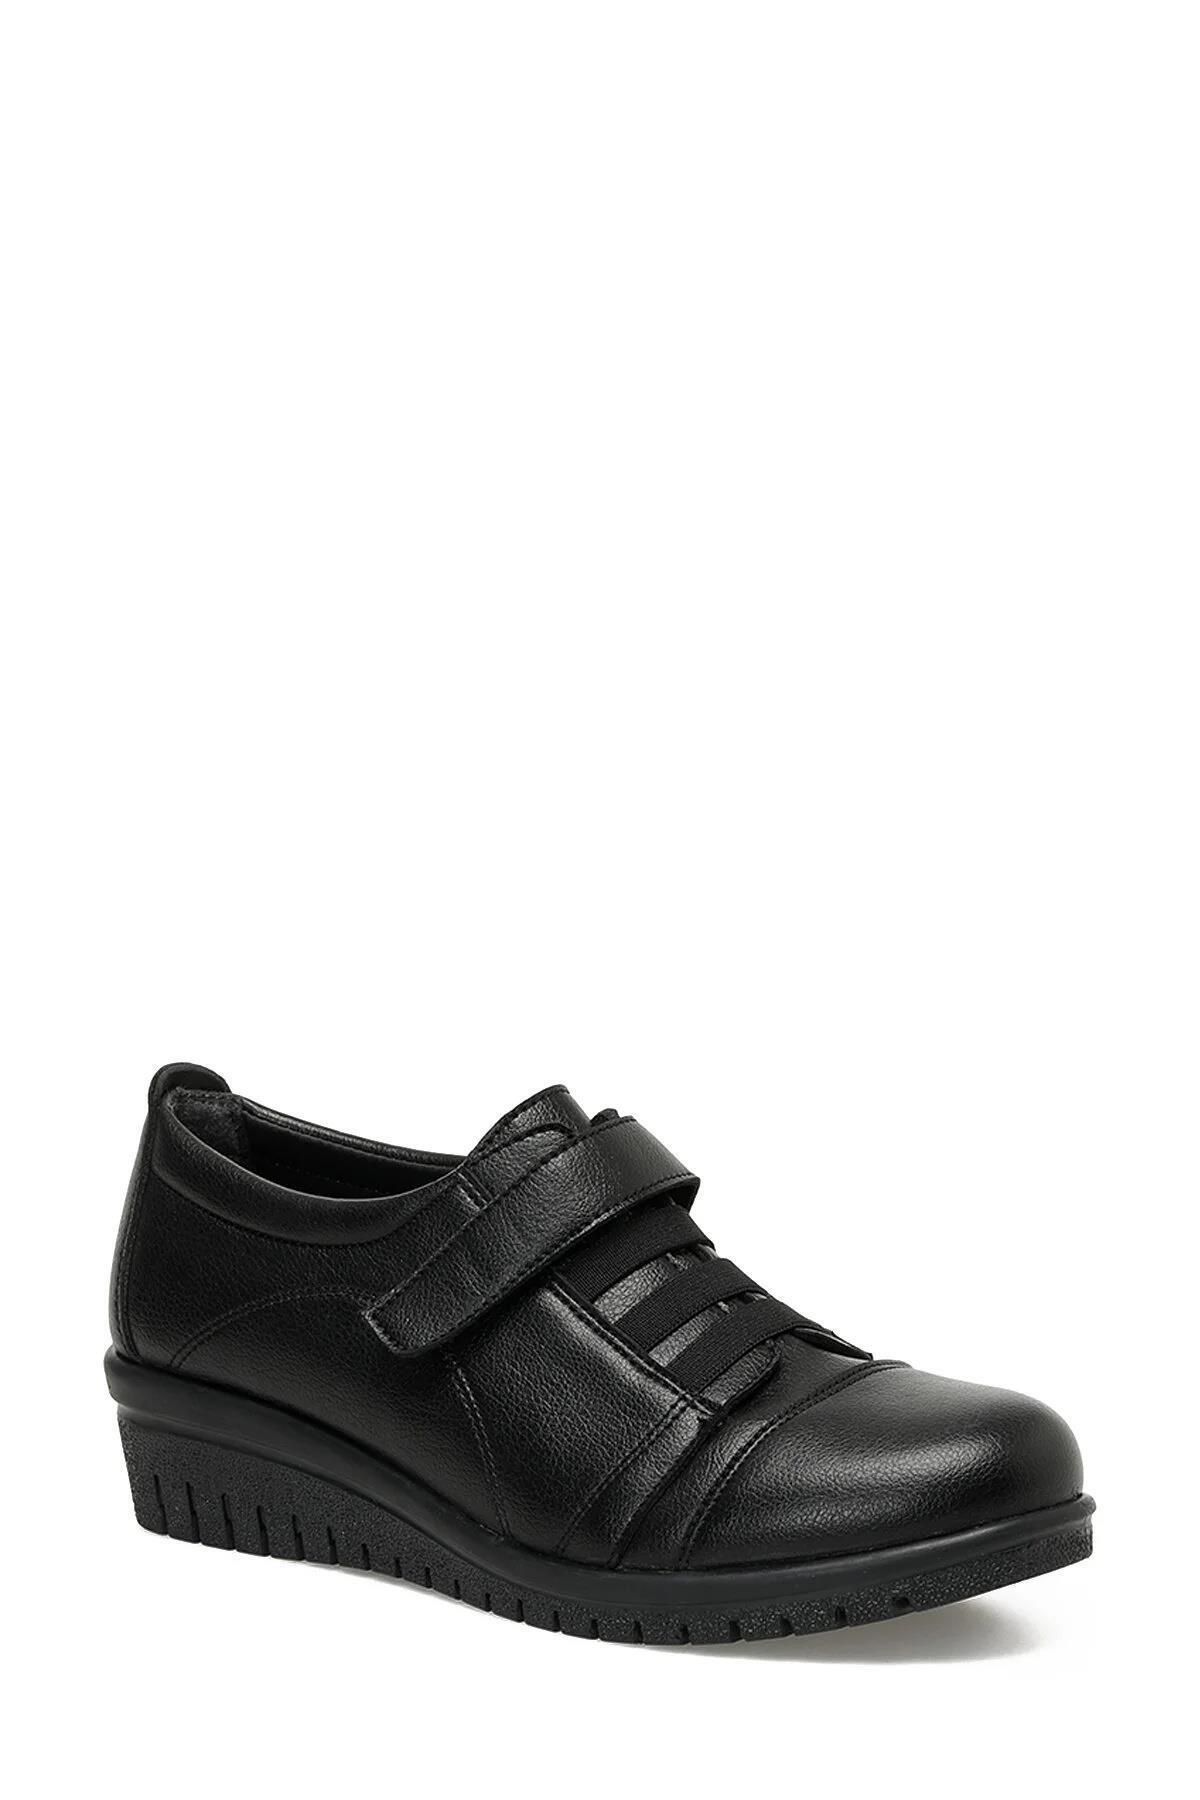 Polaris 165034.z Siyah Kadın Günlük Ayakkabı